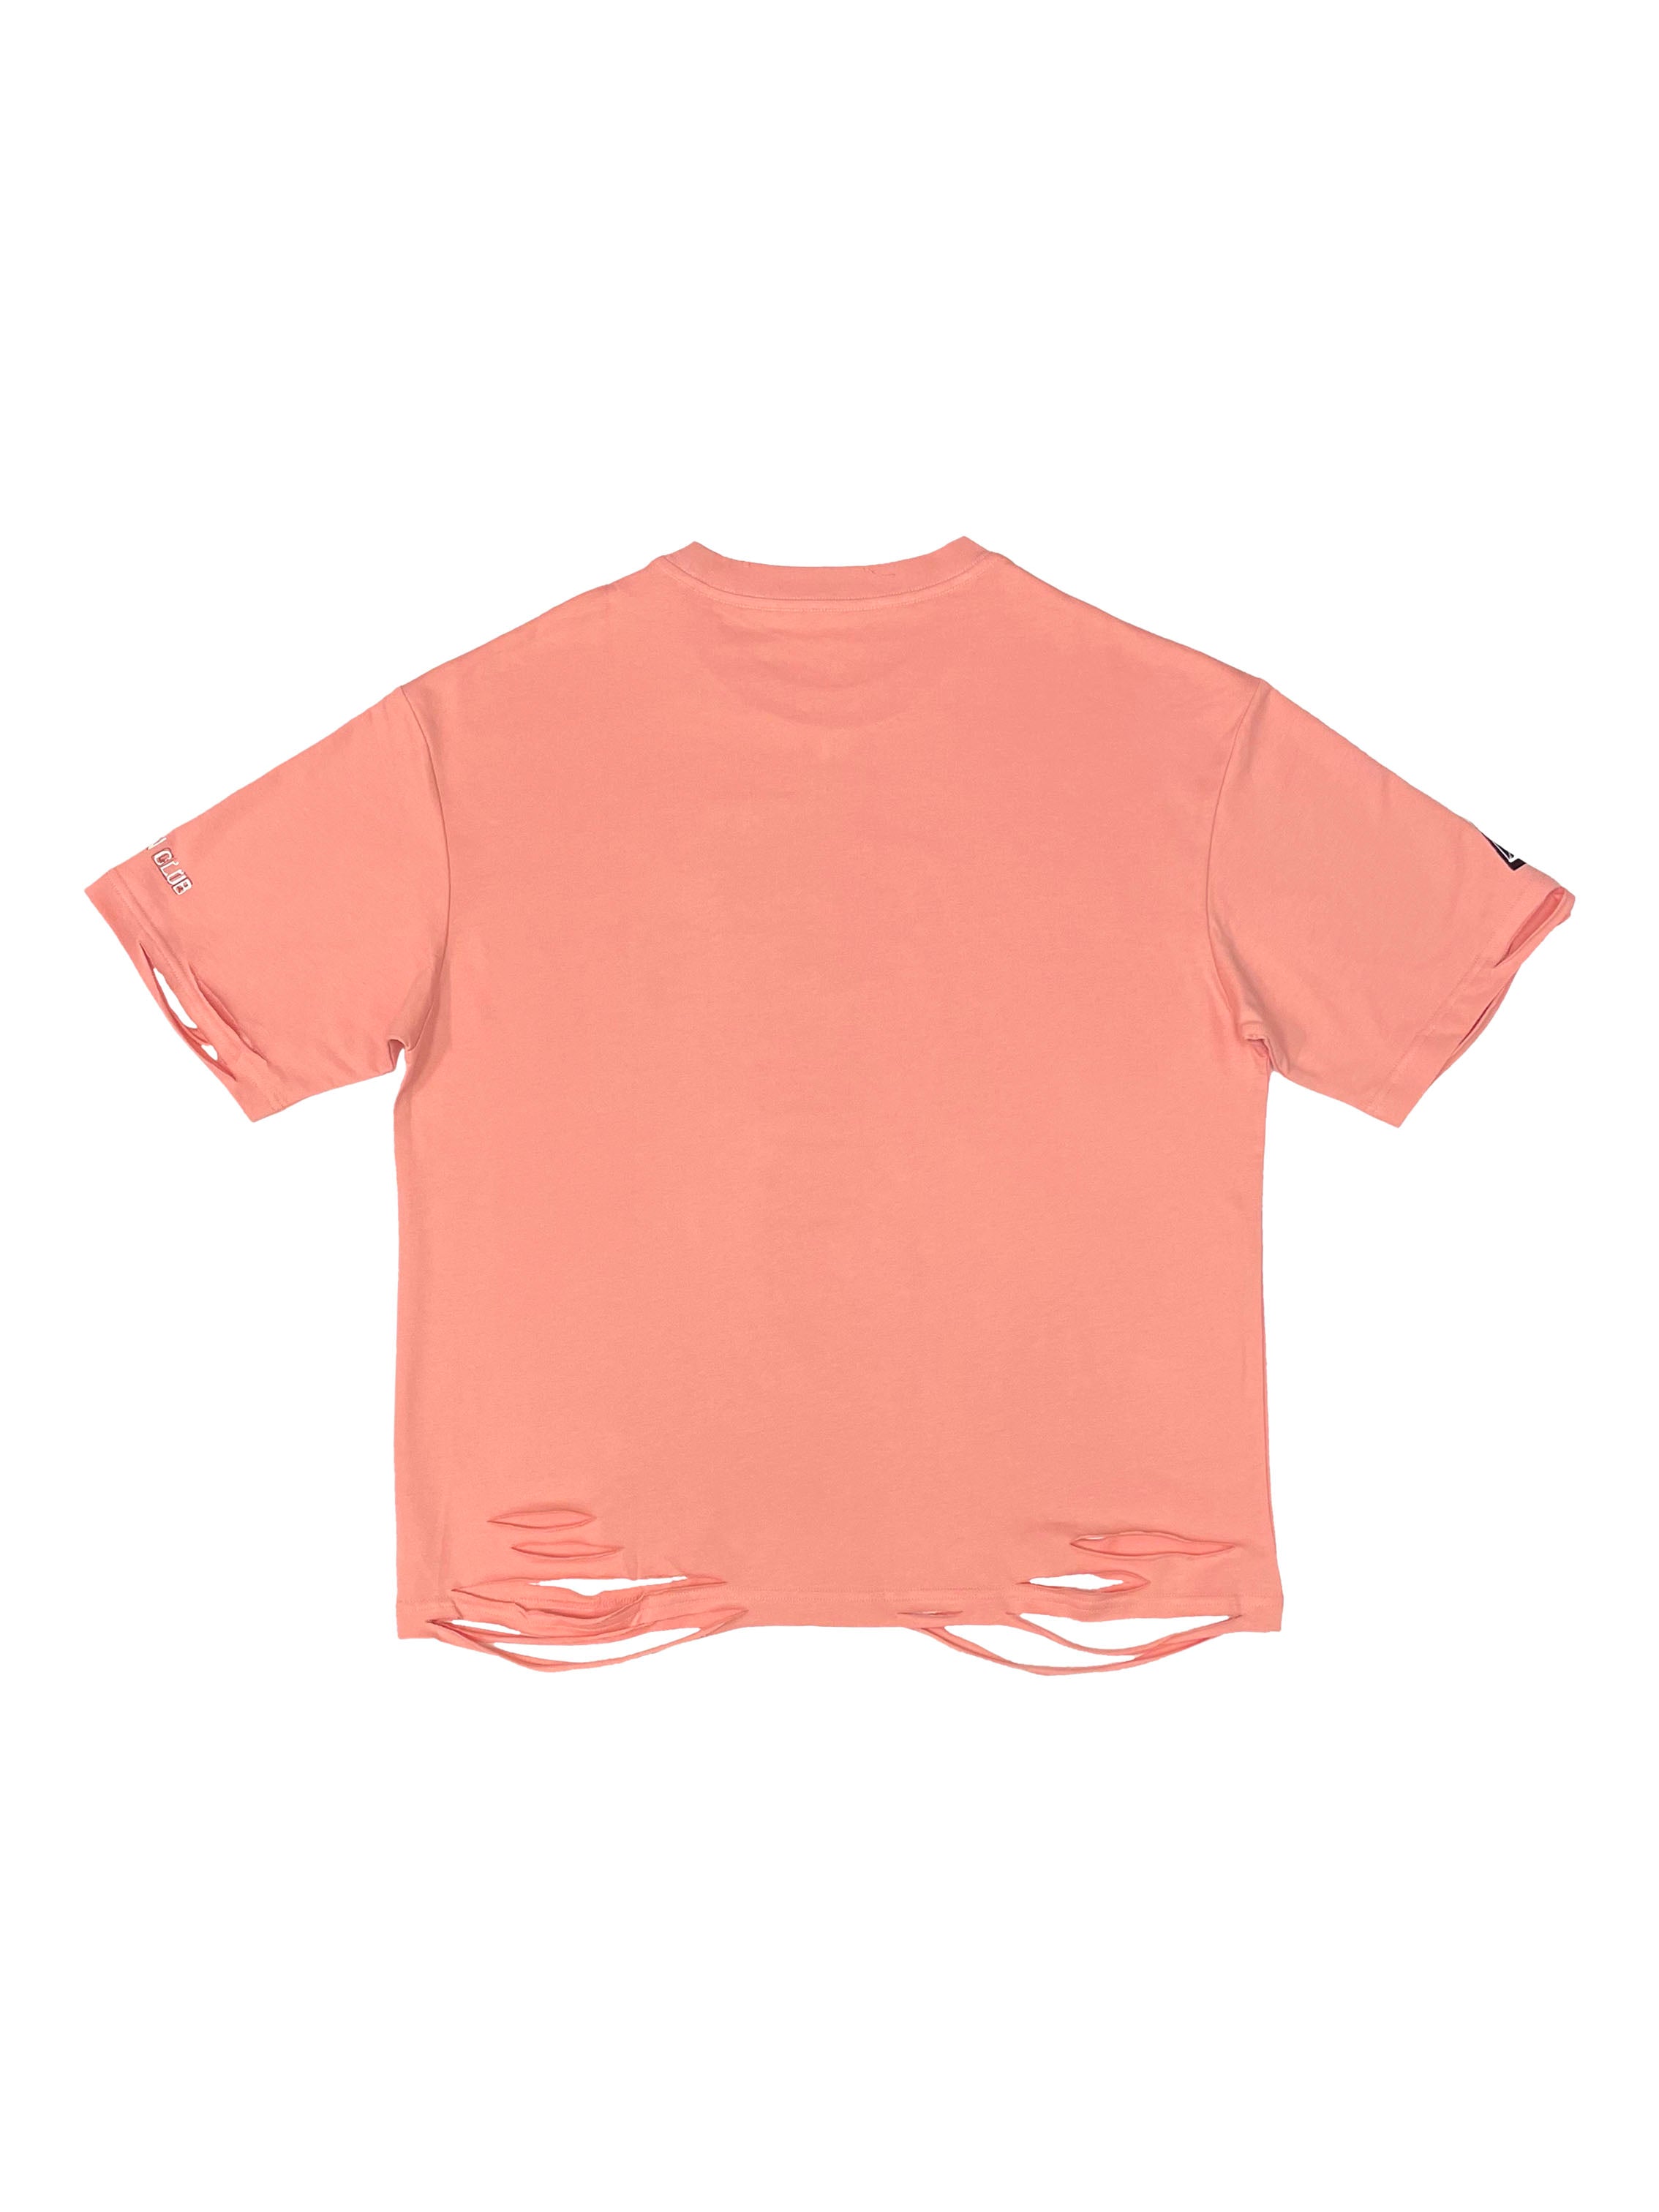 Chrysalis Tshirt (Flesh Pink)